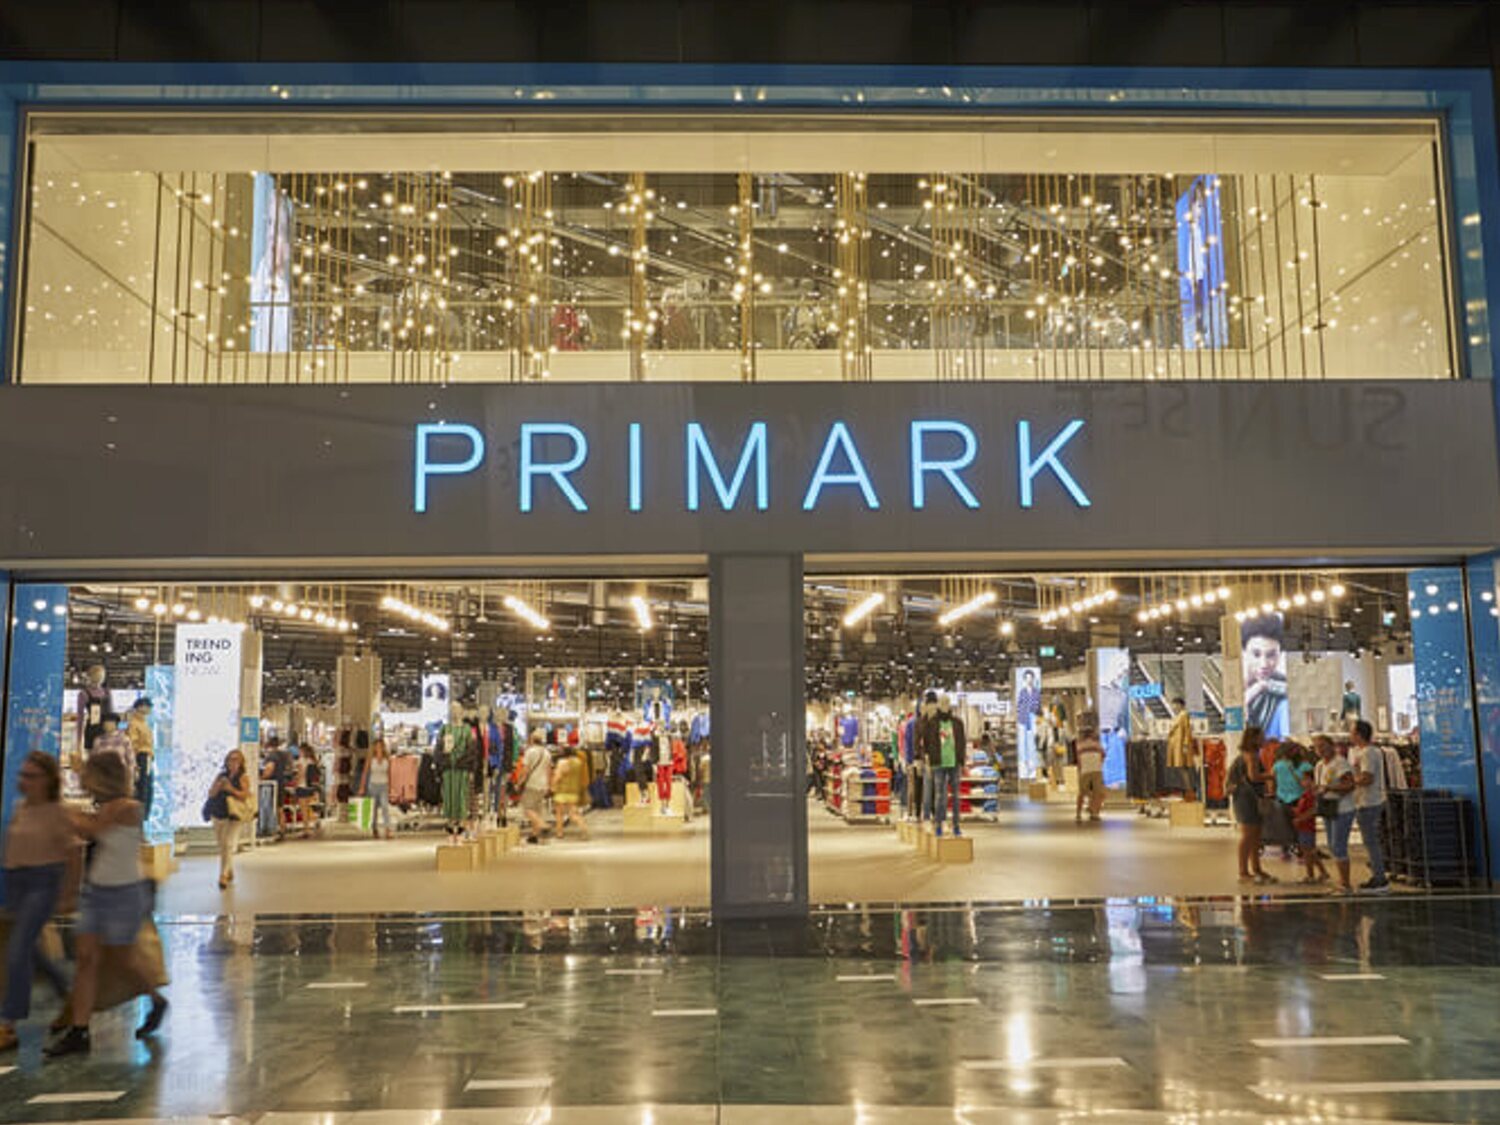 Primark abrirá estas ocho nuevas tiendas en España para las que busca 1.000 empleados